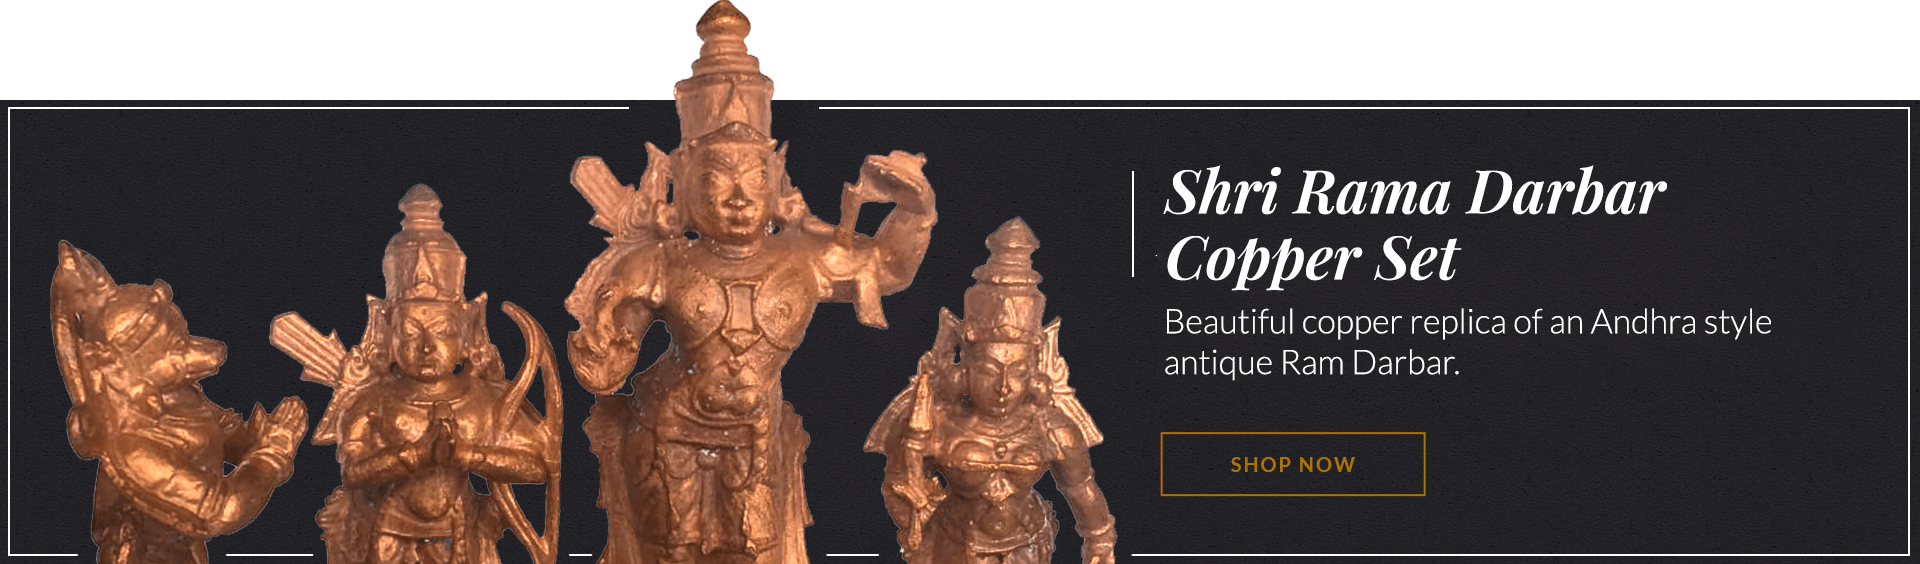 Shri Rama Darbar Copper Set